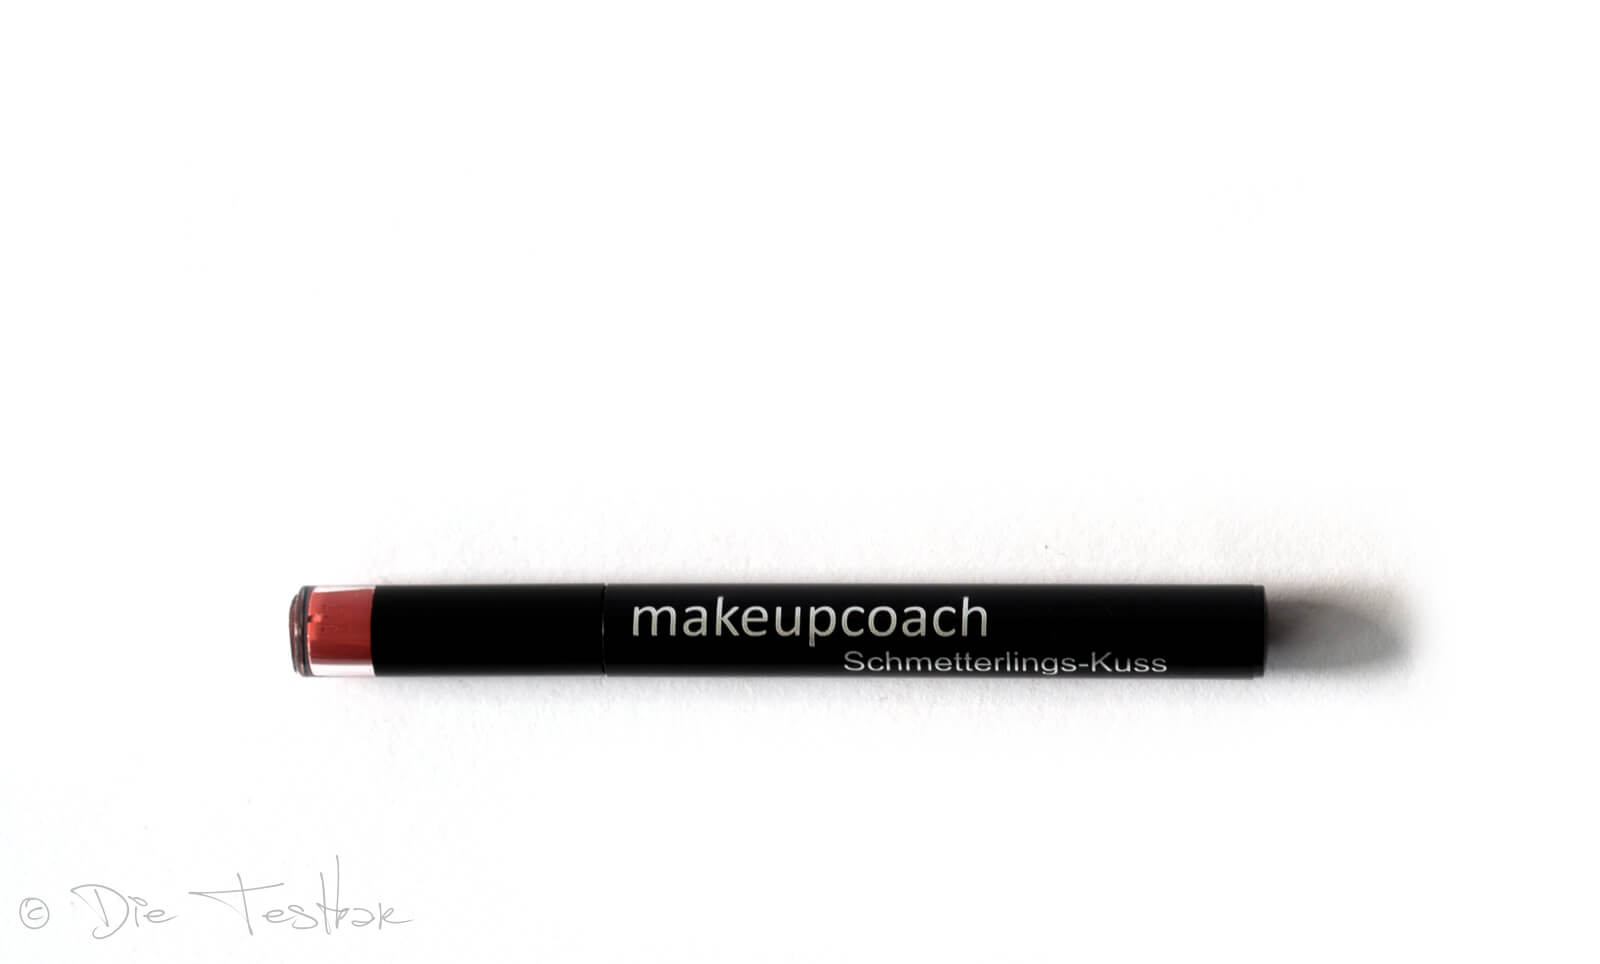 Für wunderschöne Lippen - Hochwertiges Lippen-Make-up vom makeupcoach 18